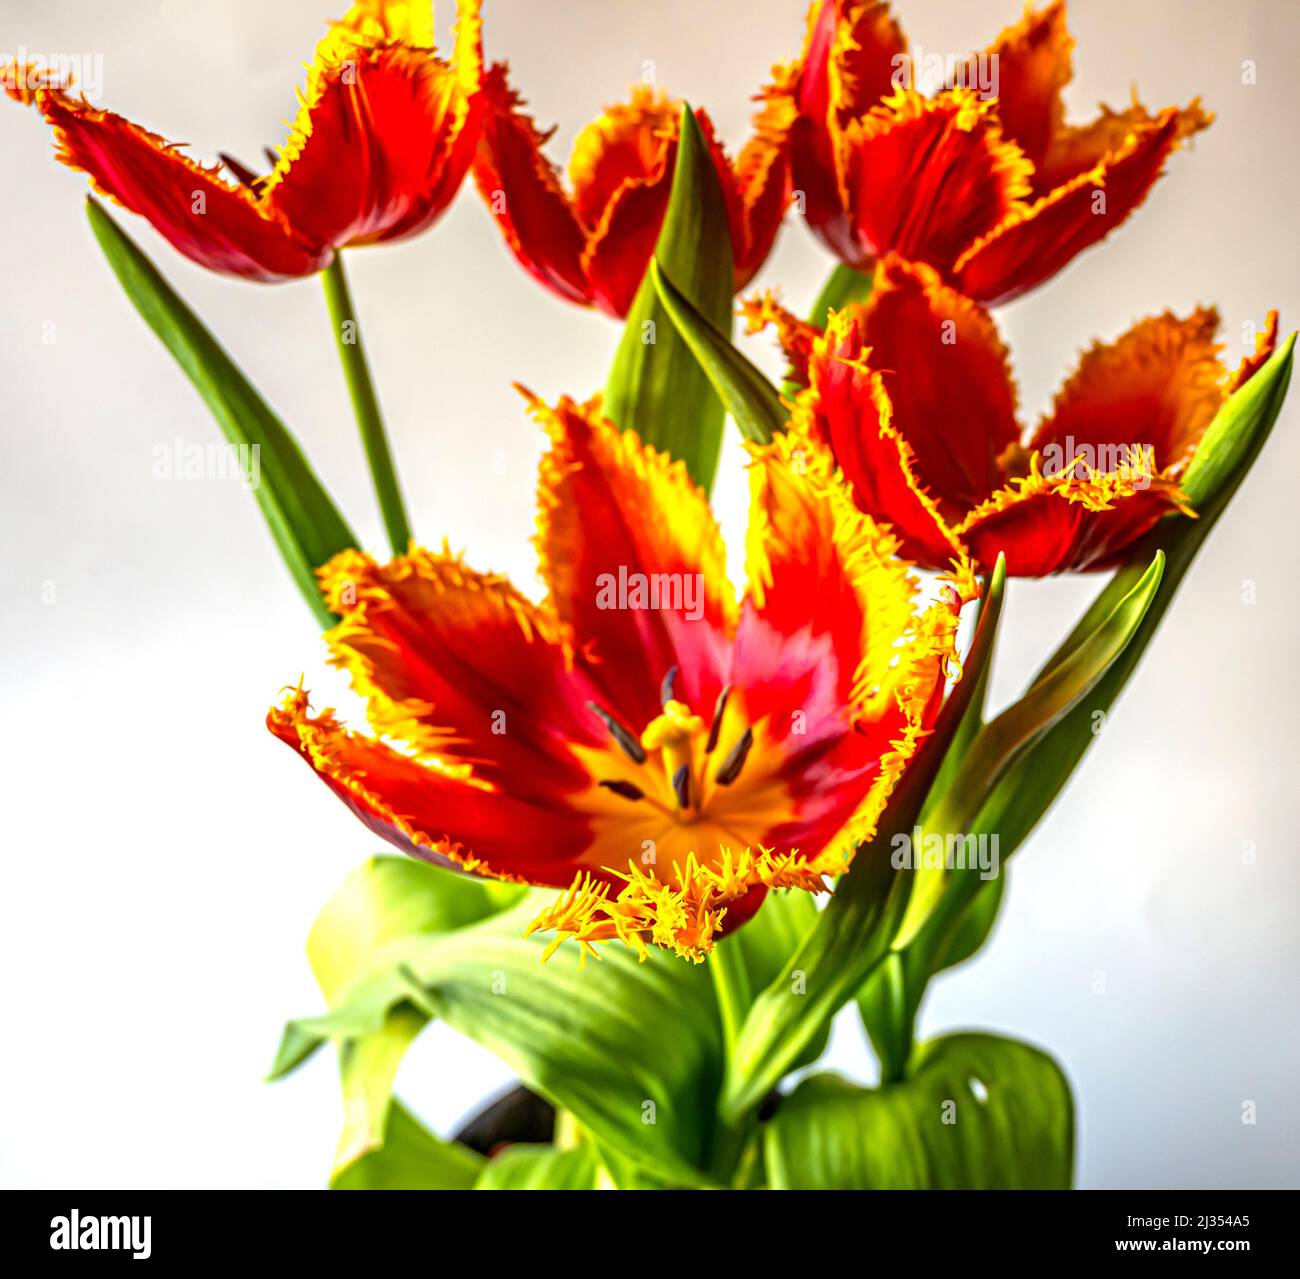 Tulipe au printemps en arrangemnt, rouge et jaune sur fond blanc Banque D'Images